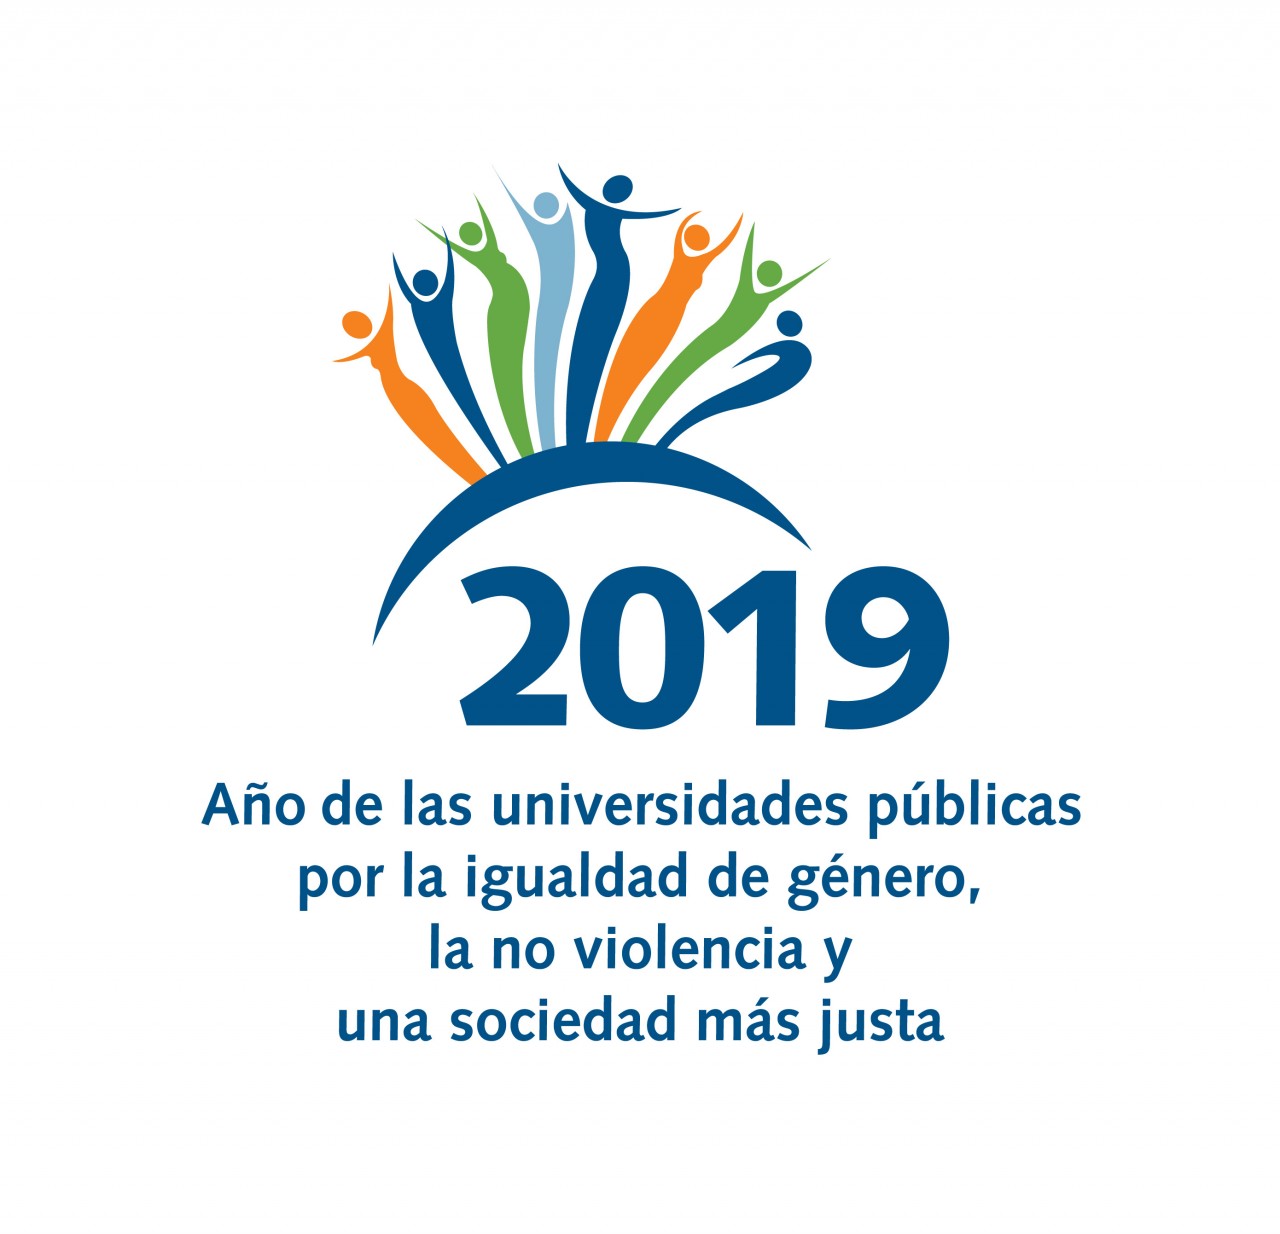 2019: Año de las universidades públicas por la igualdad de género, la no violencia y una sociedad más justa.